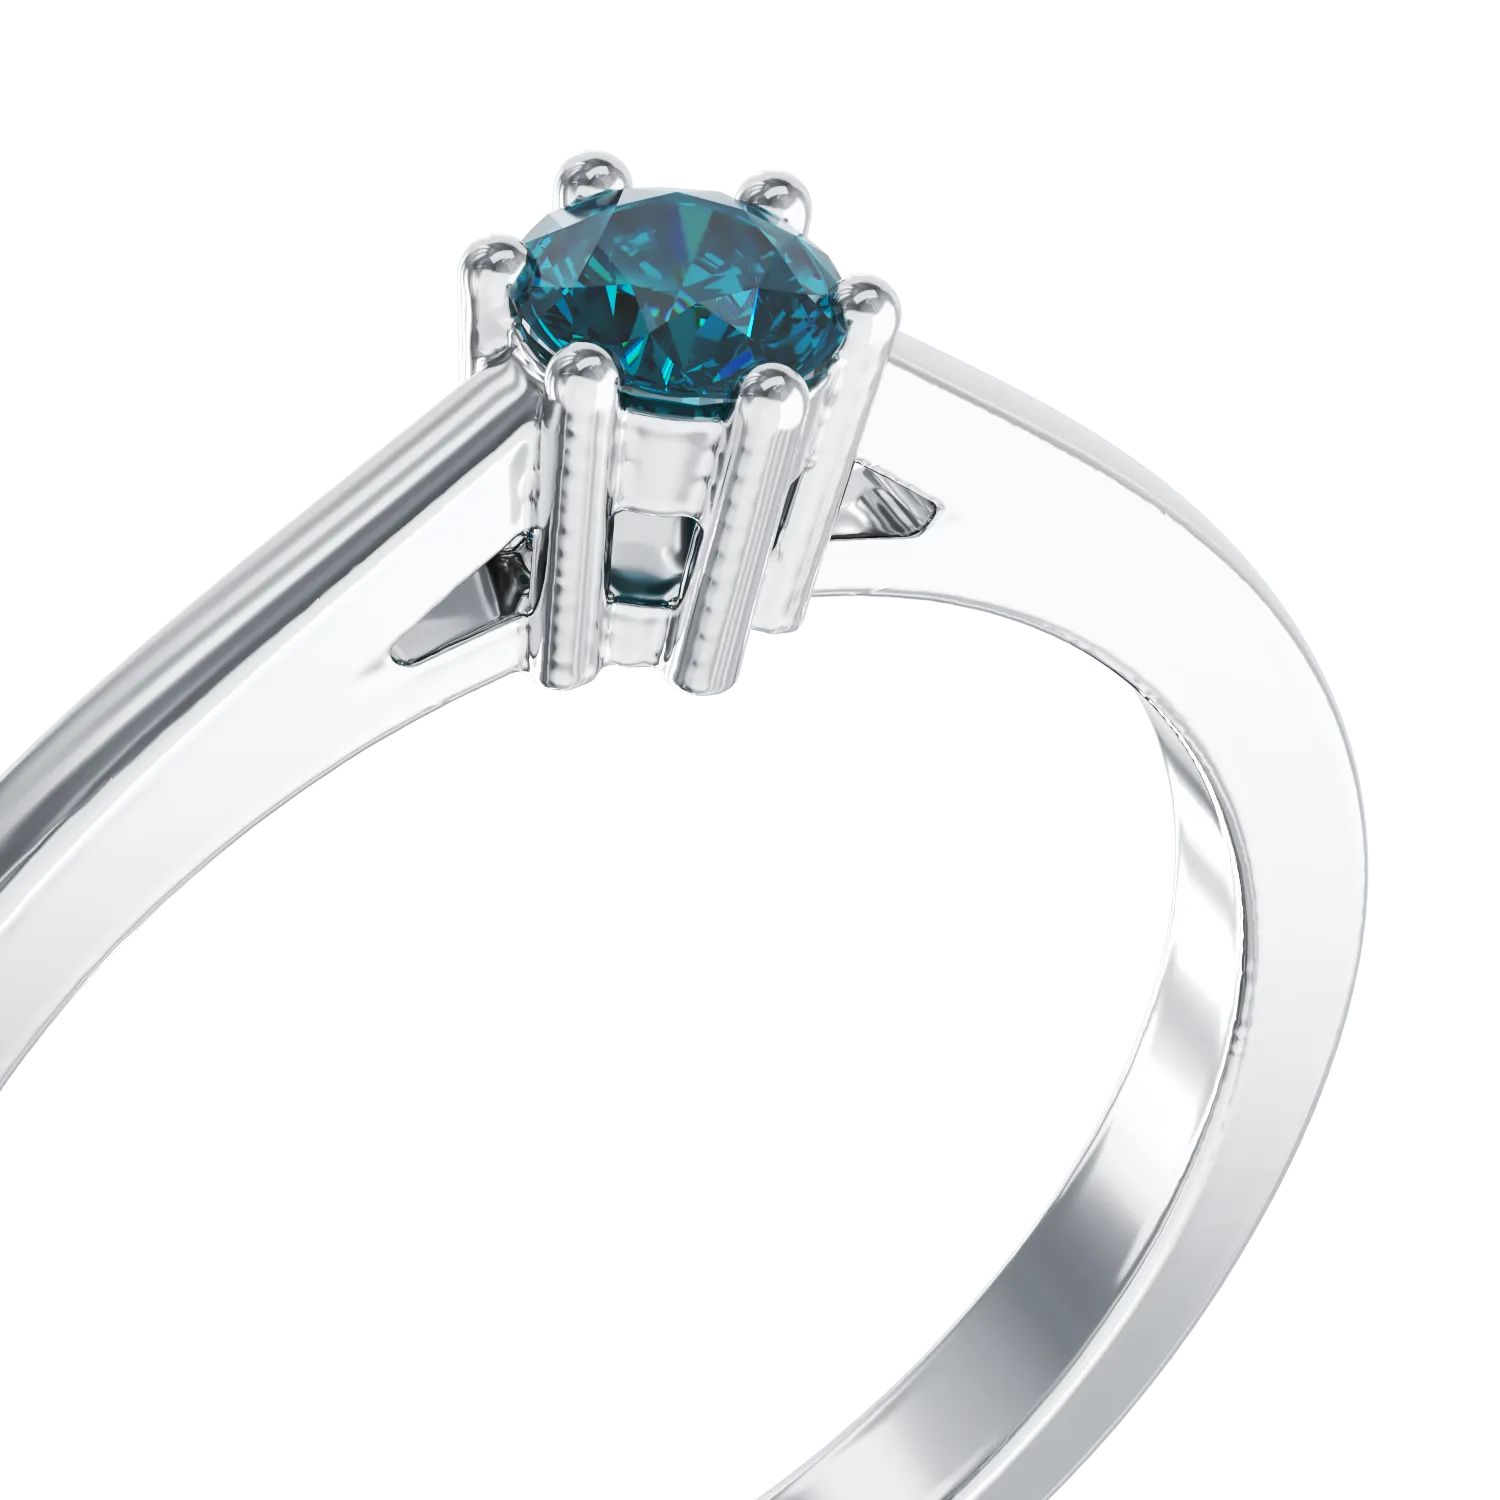 Годежен пръстен от бяло злато 18K със син диамант 0.31ct